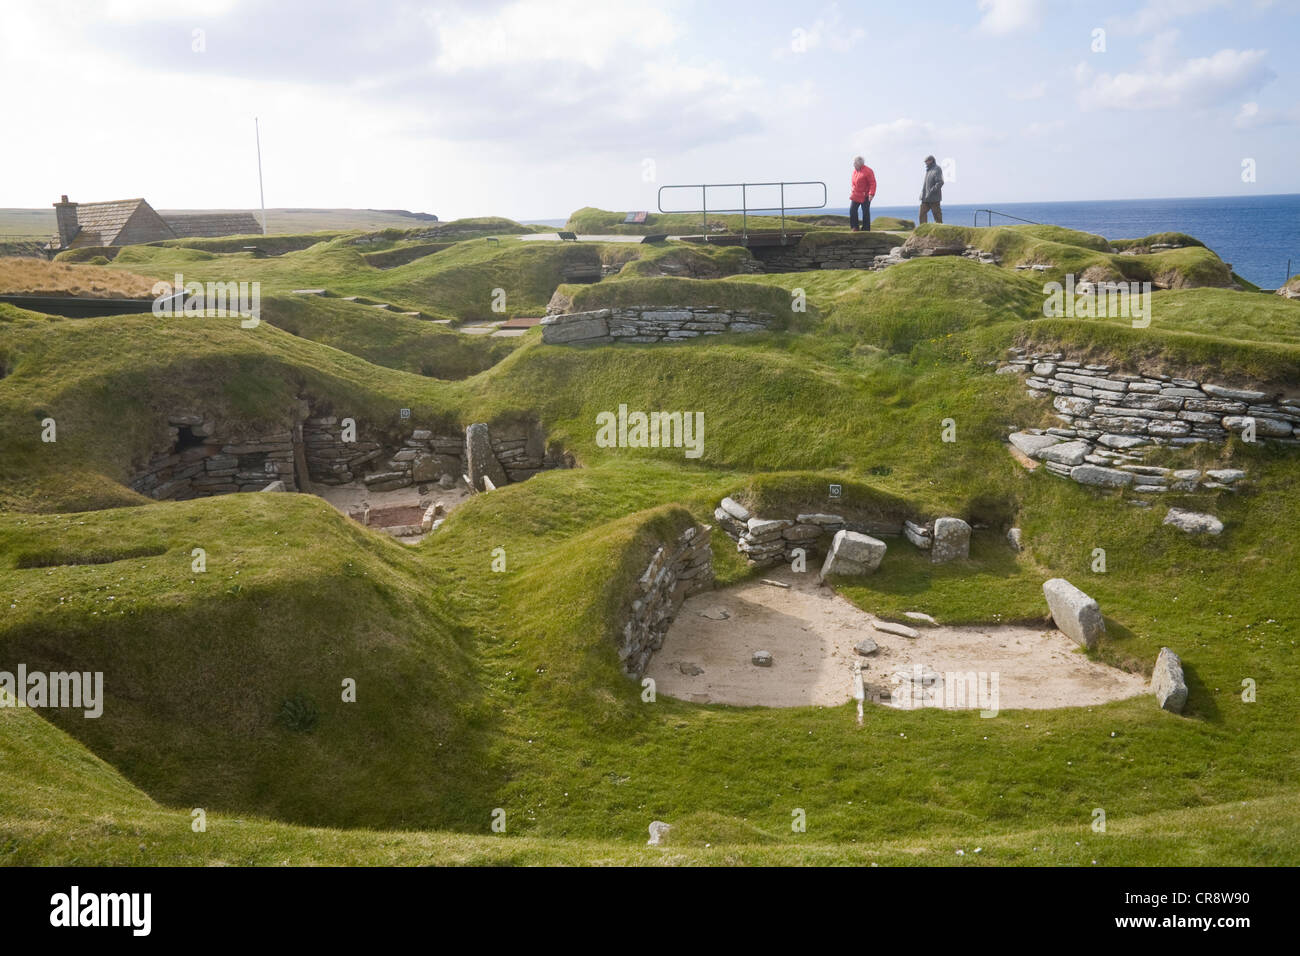 Baie de Skaill continentale Ouest Orcades cabanes à partir de l'âge de pierre en pierre sans mortier Skara Brae village néolithique liée par des passages Banque D'Images